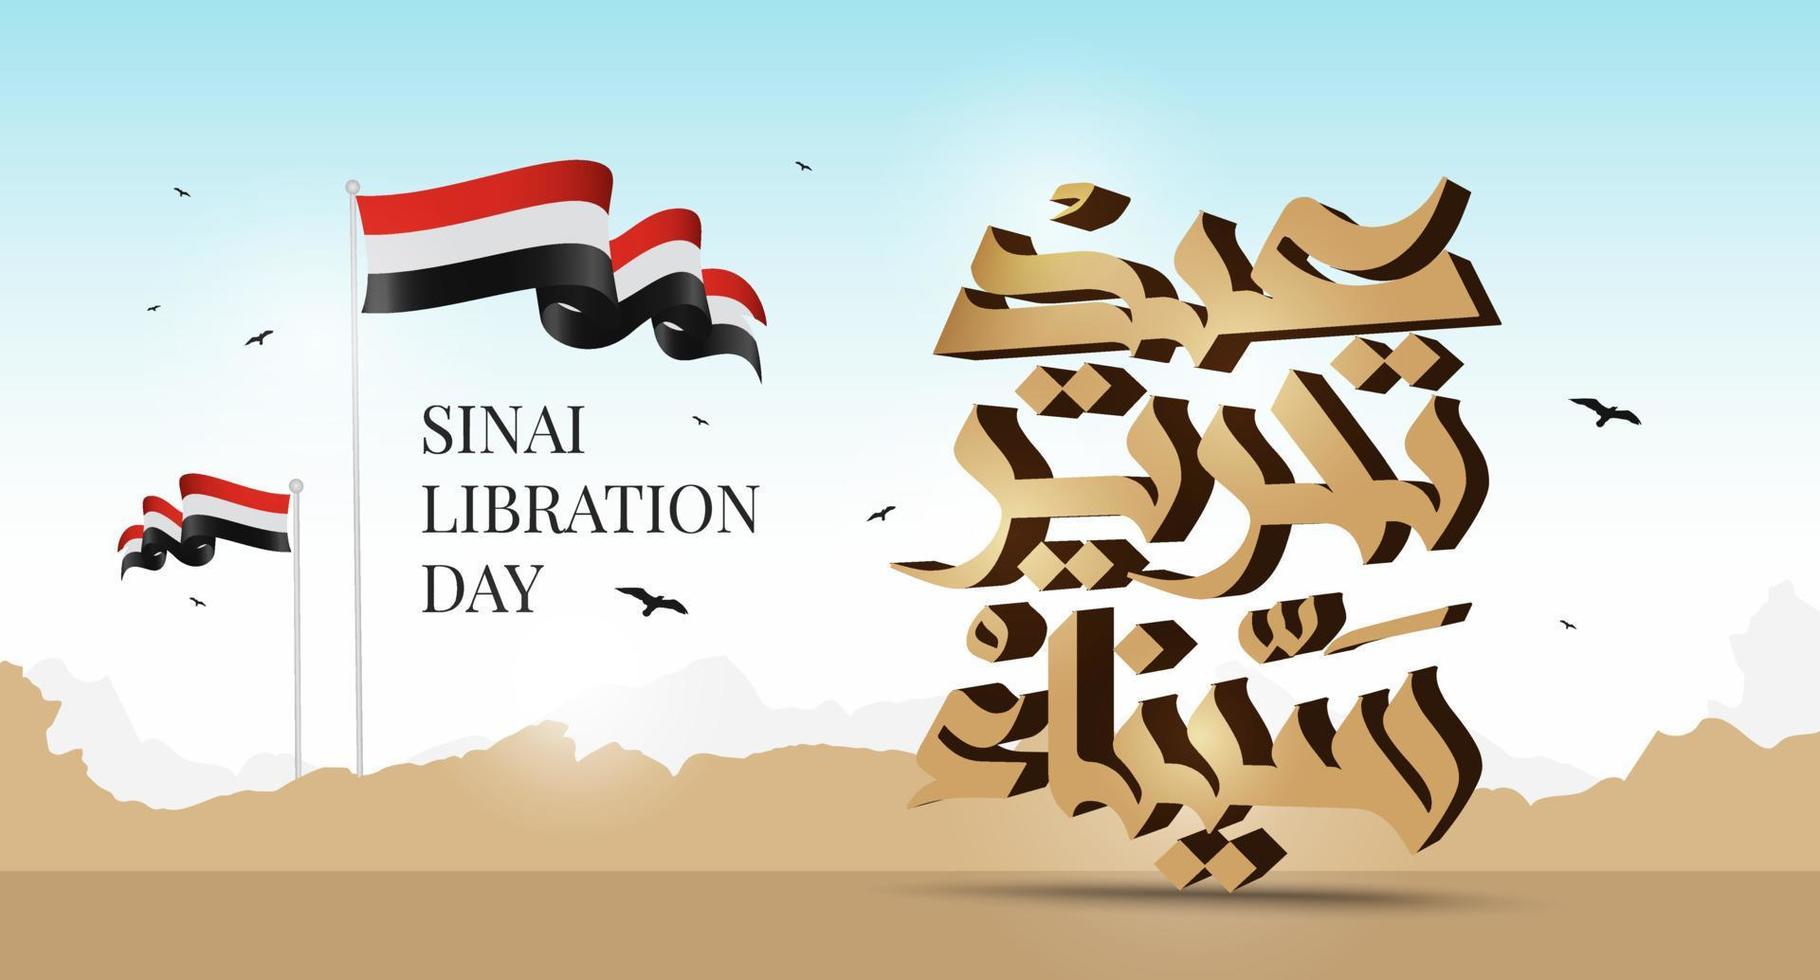 egypte 6 octobre guerre 1973 illustration vectorielle de calligraphie arabe. jour de l'indépendance du sinaï, jour de la libération du sinaï 25 avril. vecteur